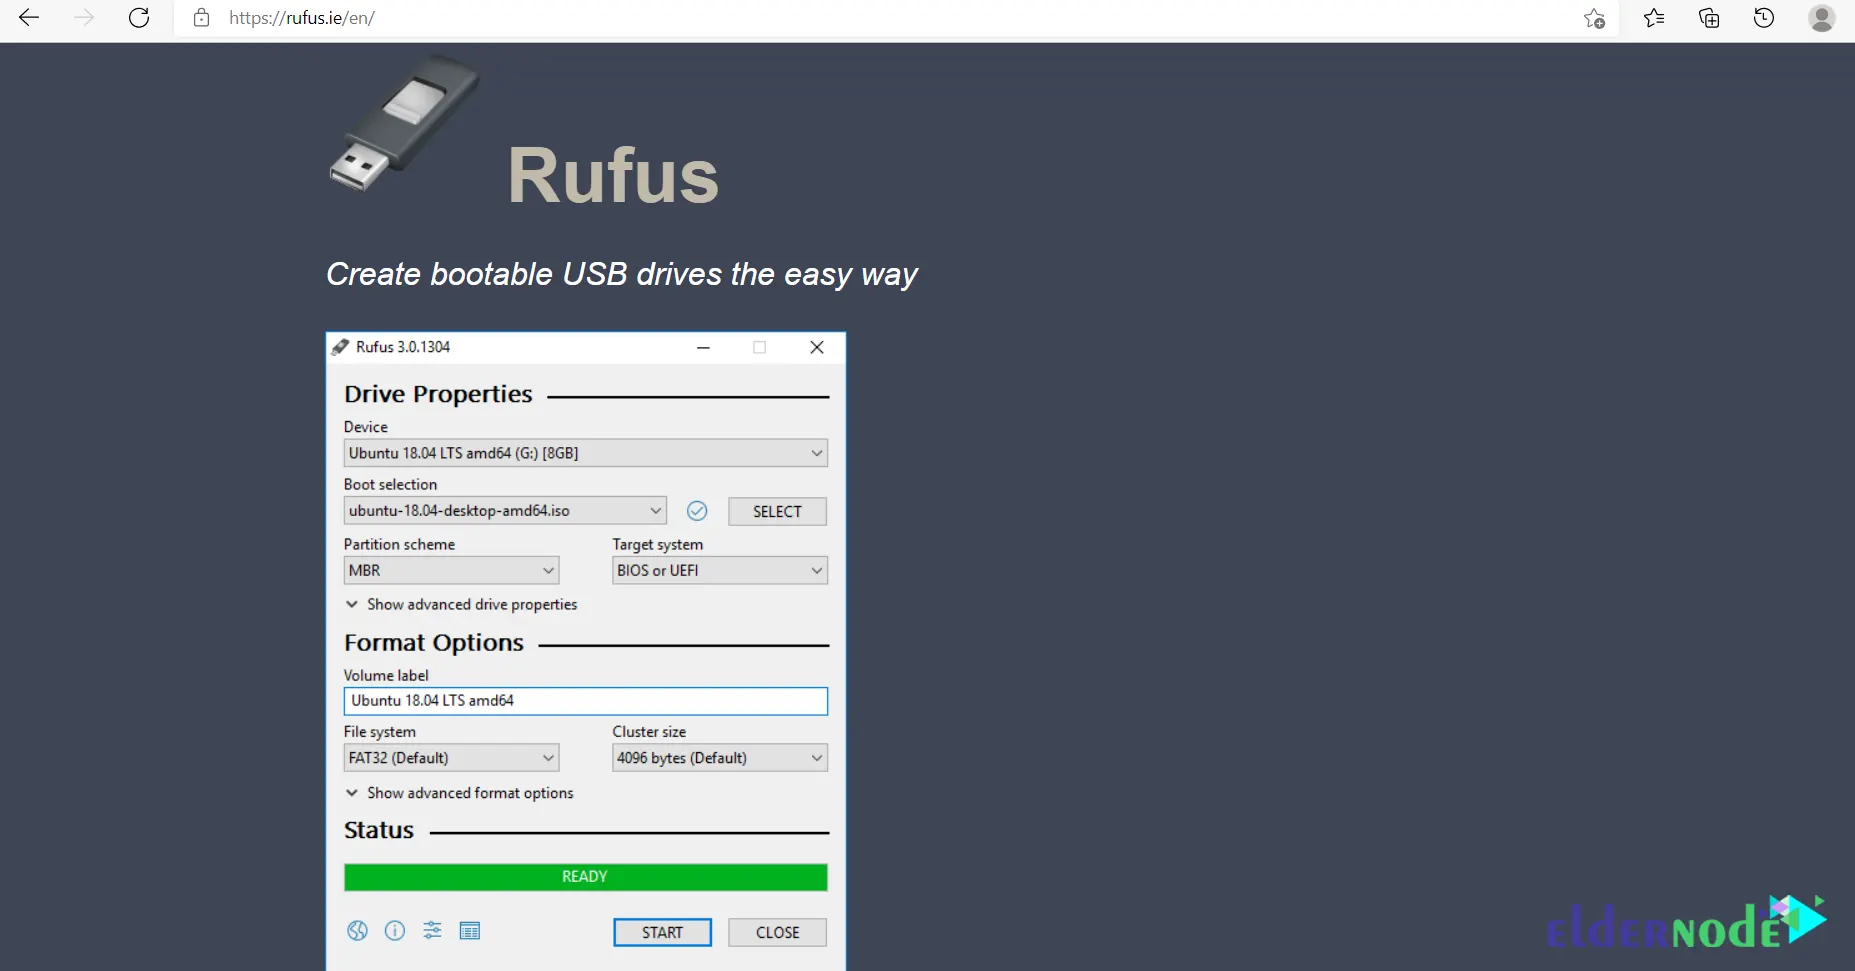 Rufus-website